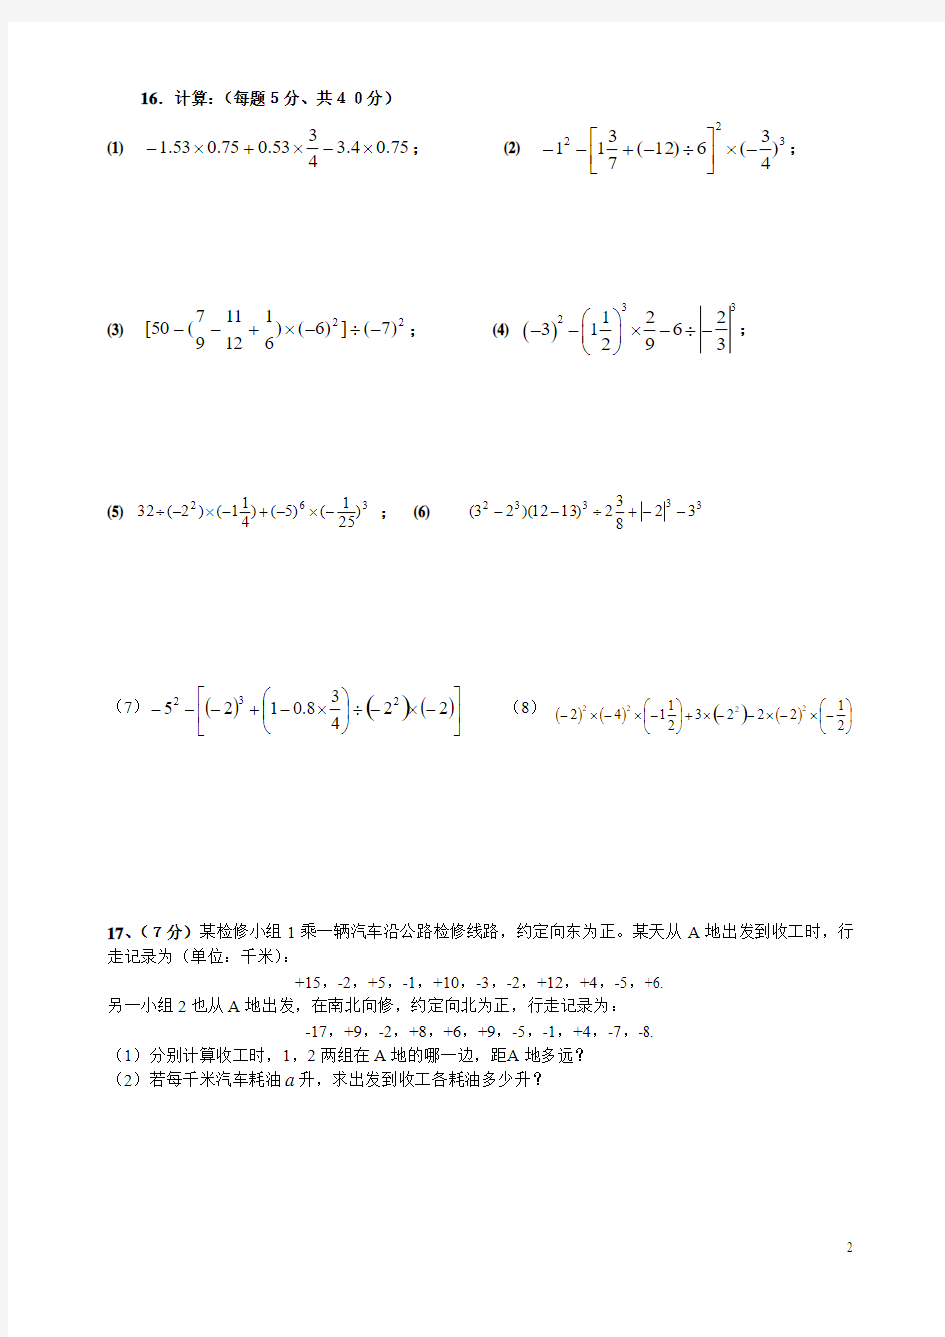 七年级数学(上)第二章有理数综合测试题(6)(成都市东湖中学)